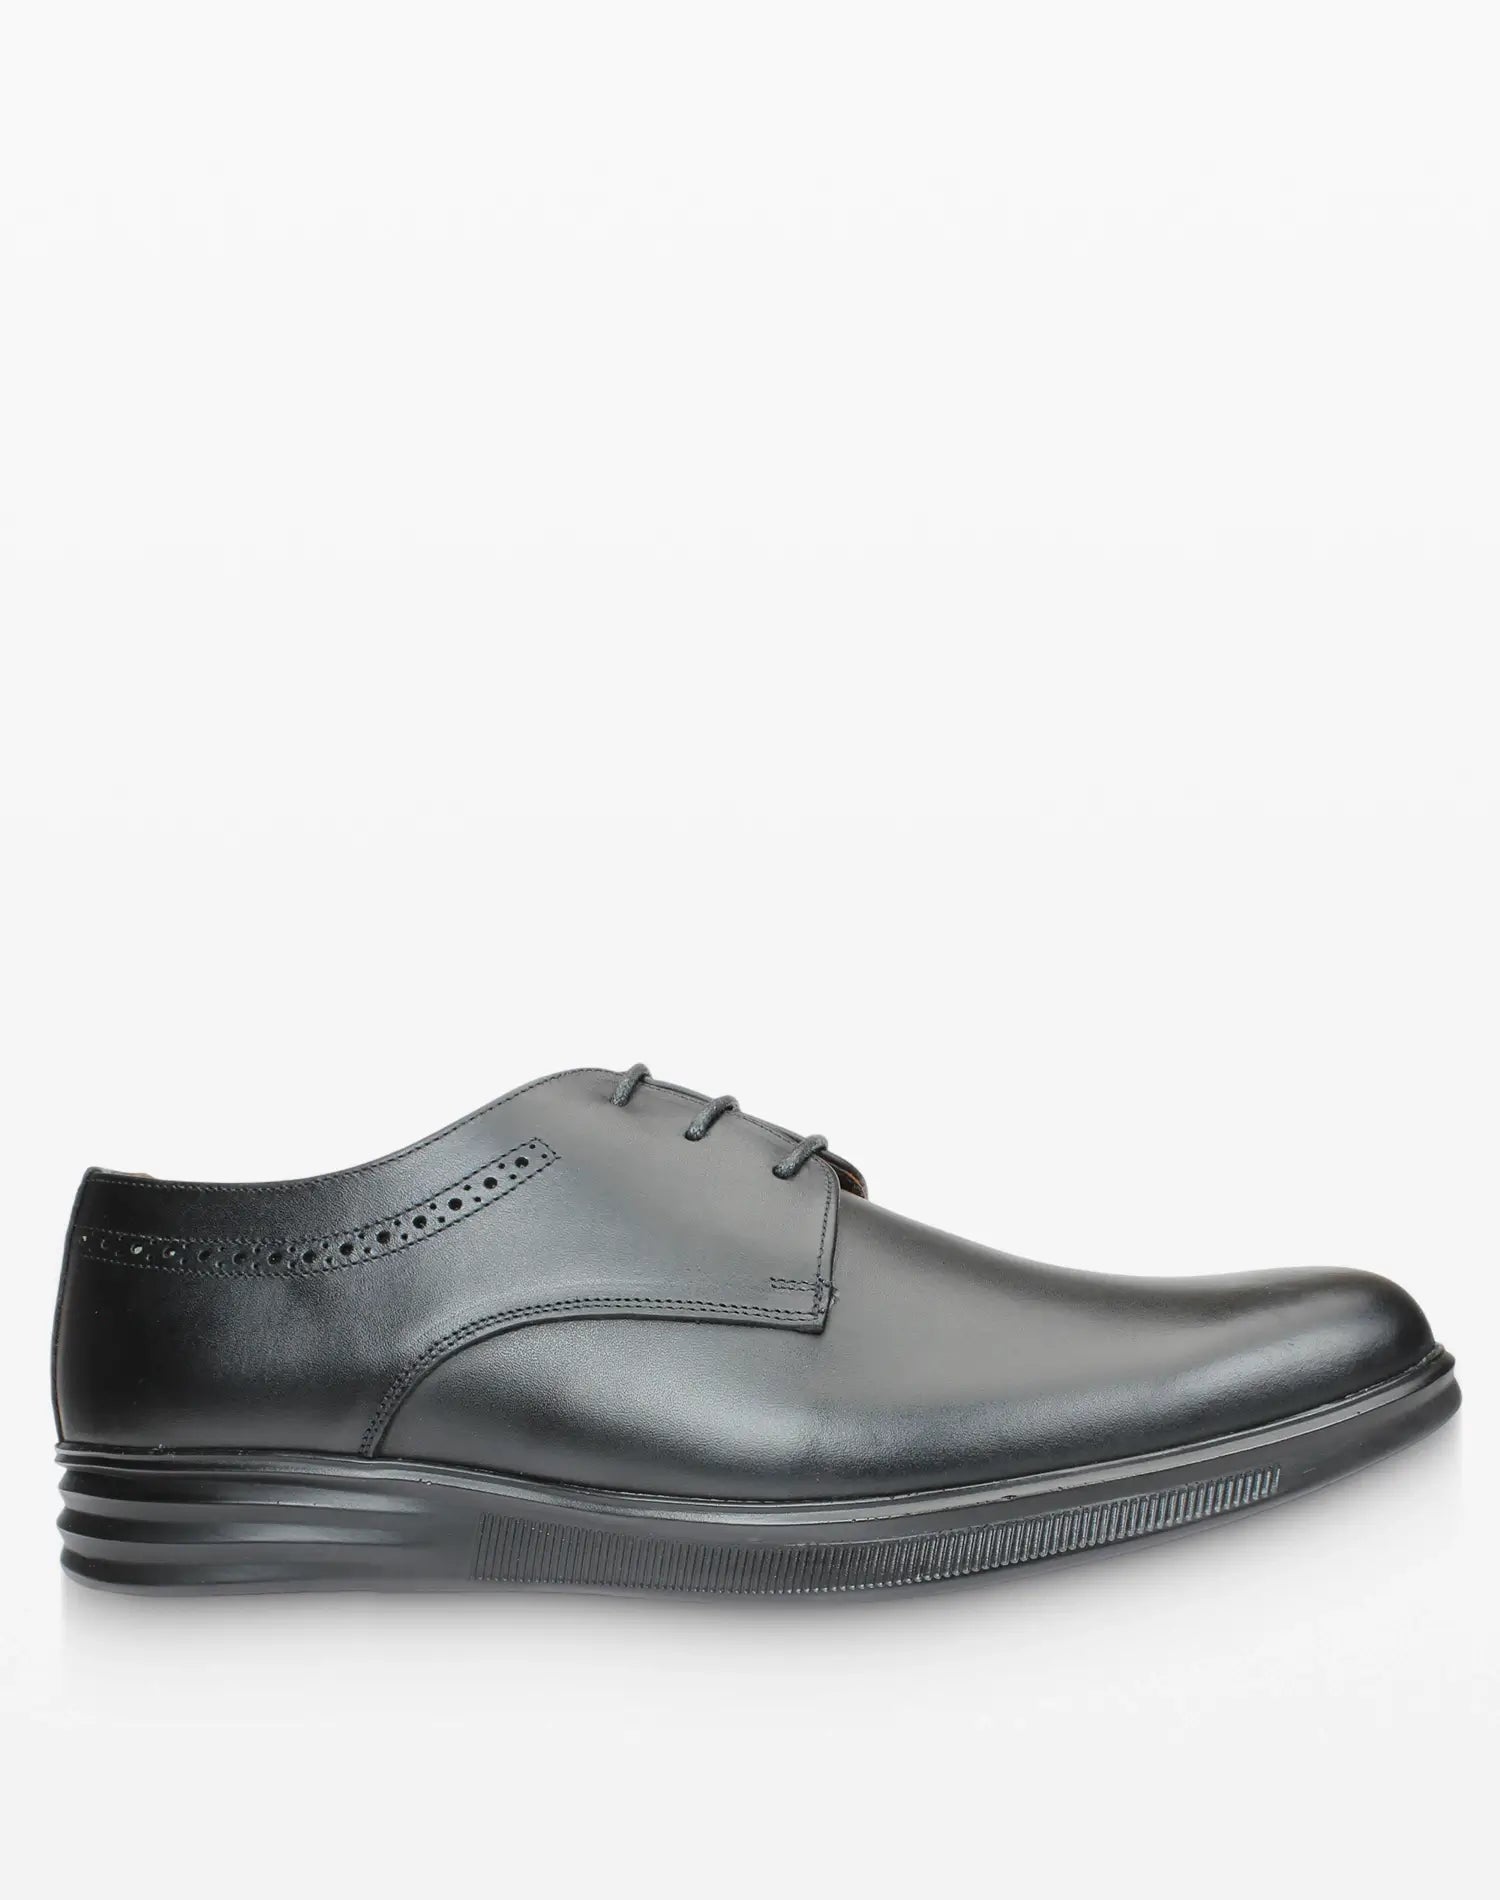 حذاء أوكسفورد رجالي كلاسيكي - أسود صورة من الجانب